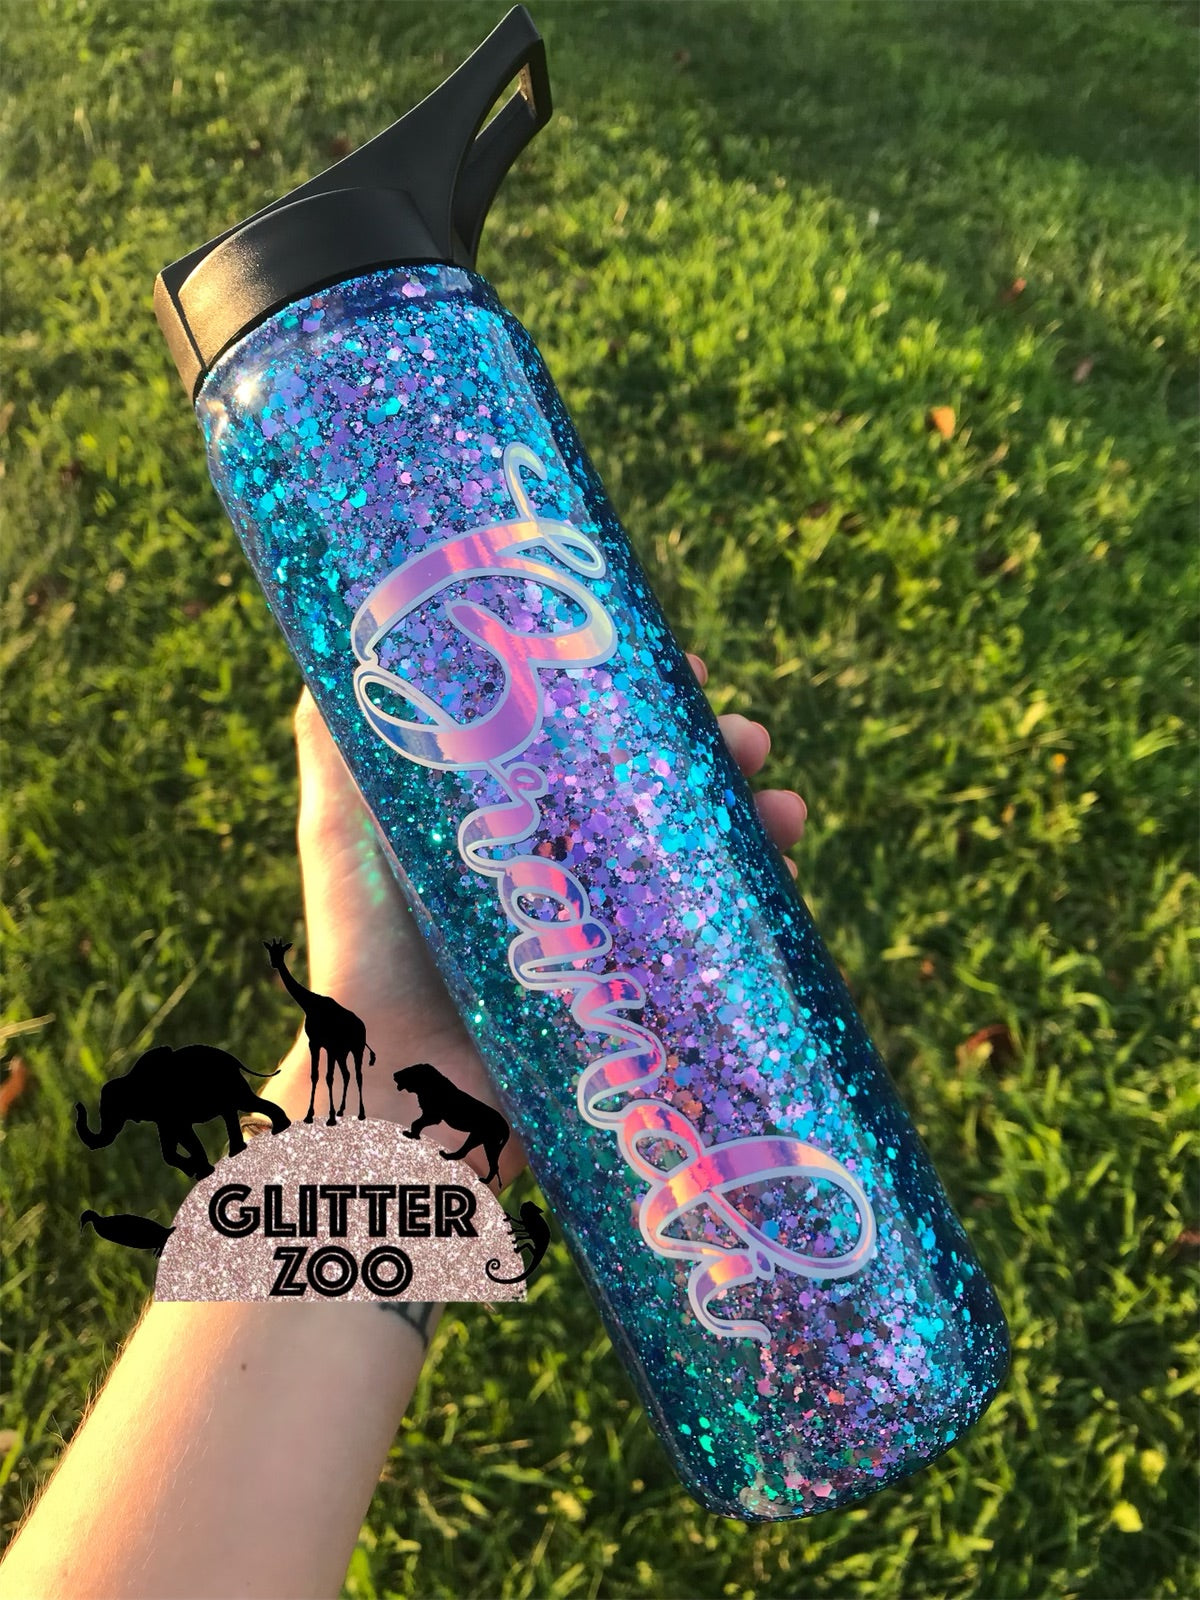 Custom Glitter Tumbler